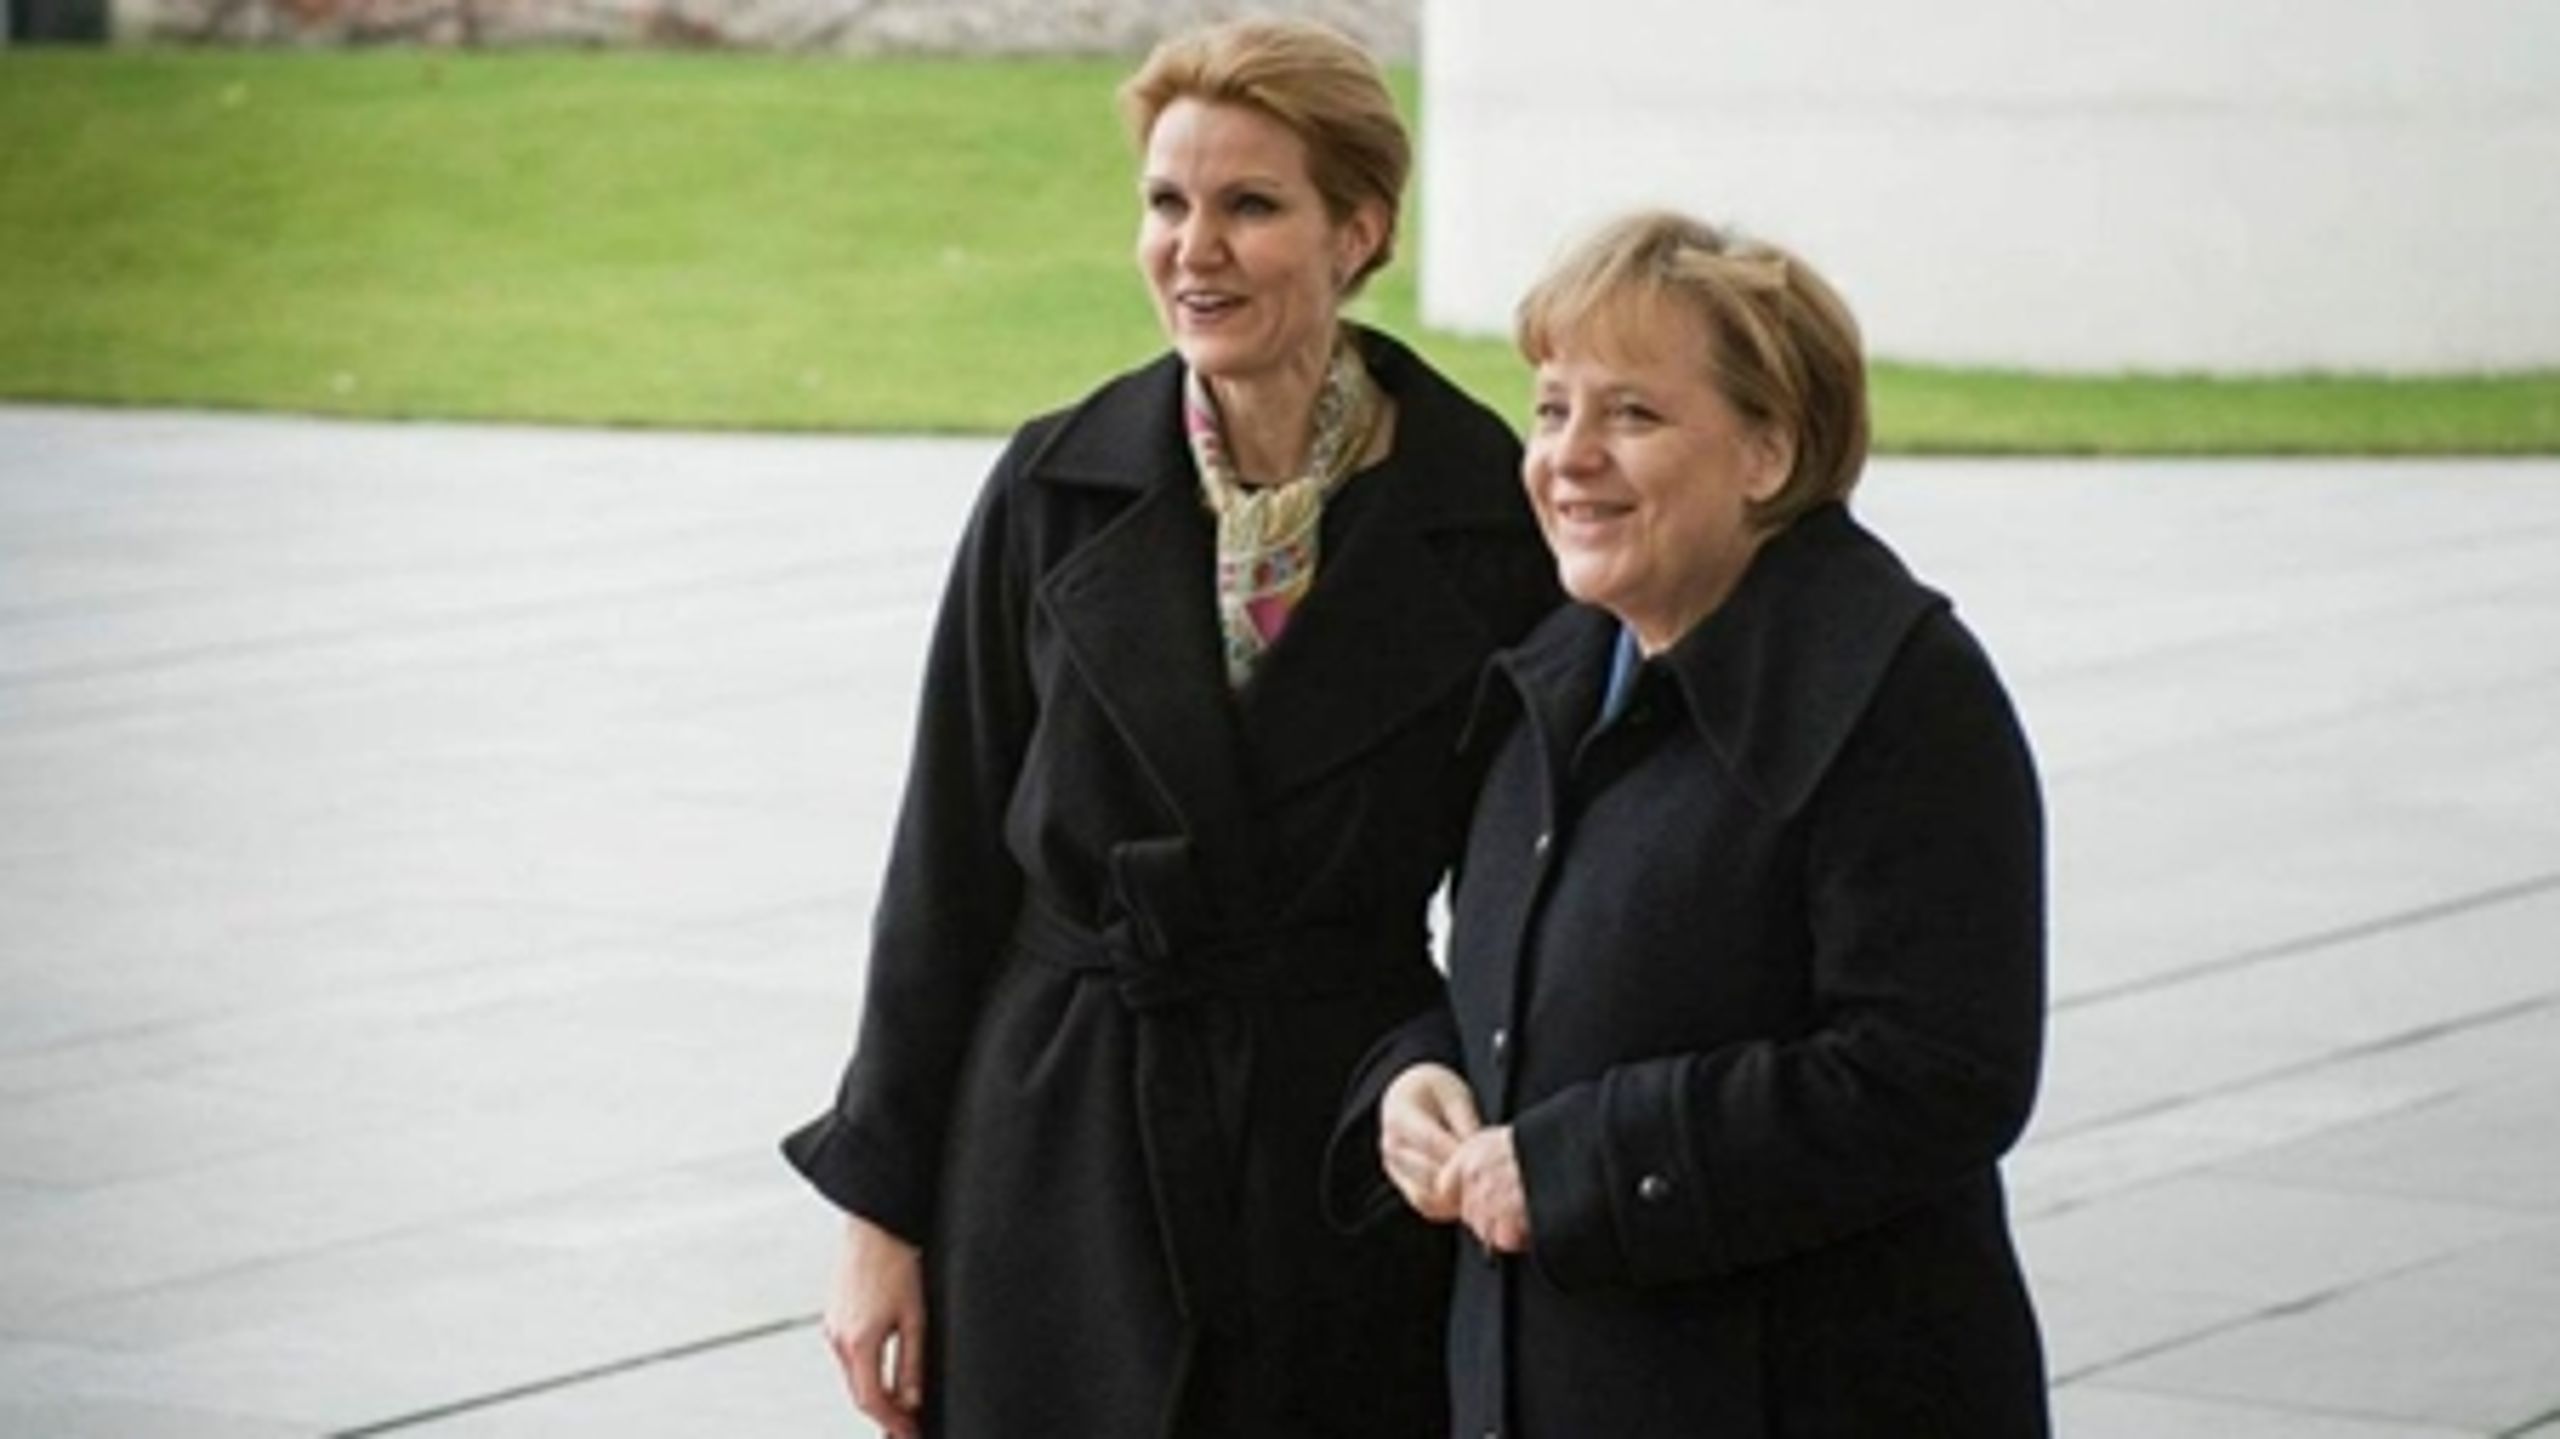 Ifølge meningsmålingerne står Helle Thorning-Schmidt (S) allerede til at blive udskiftet efter første regeringsperiode. Utilfredse vælgere er billedet i et kriseramt Europa, hvor Merkel i Tyskland er undtagelsen.